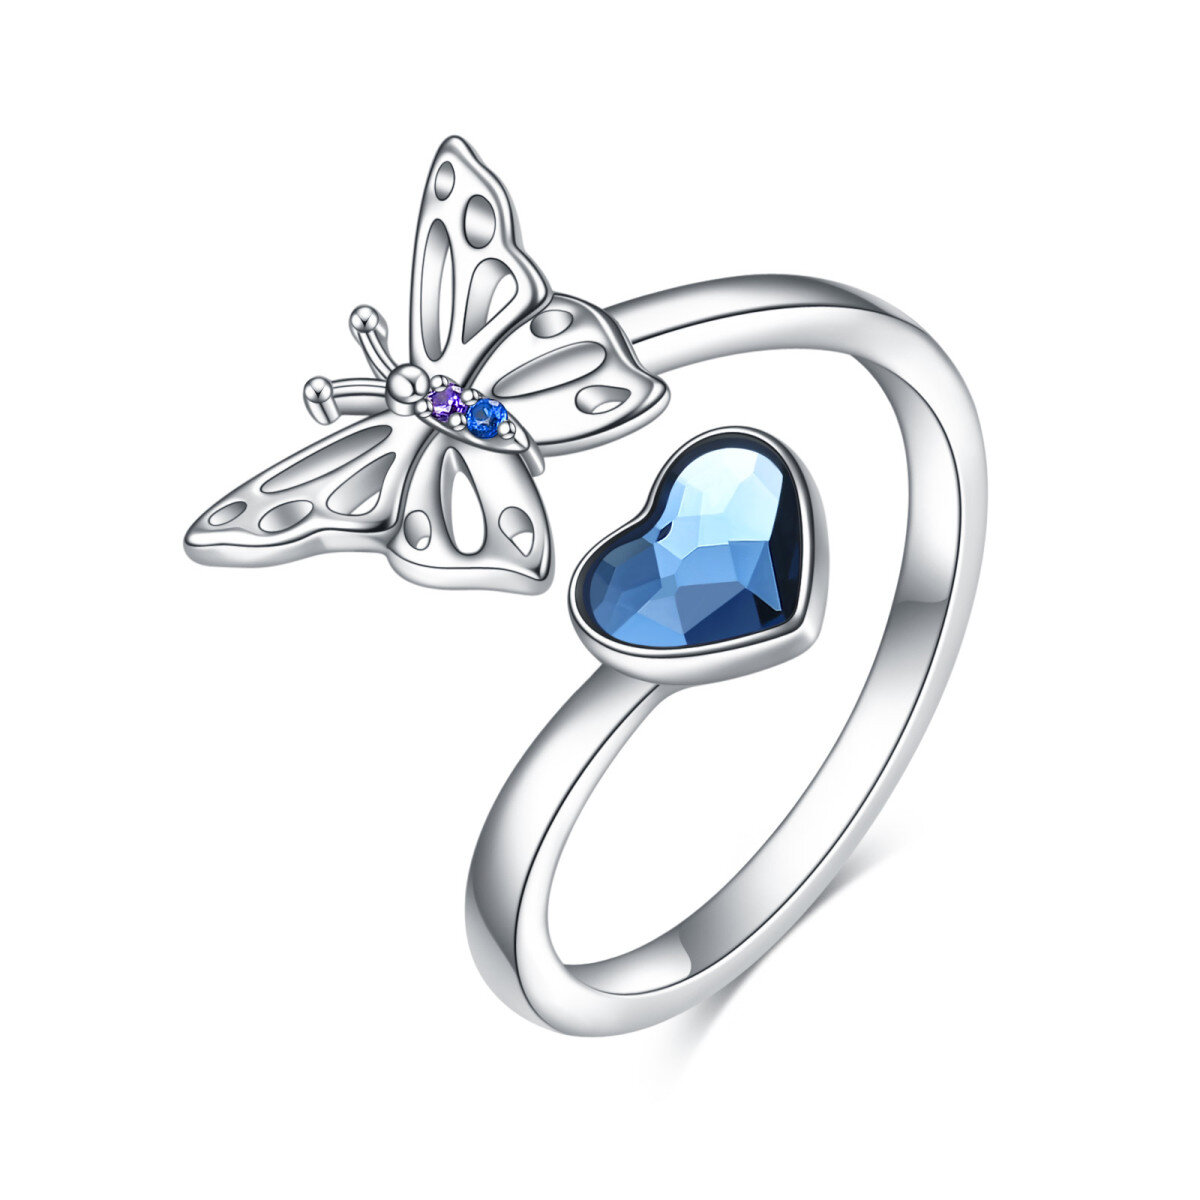 Offener Ring aus Sterlingsilber mit herzförmigem Kristall und Schmetterling-1